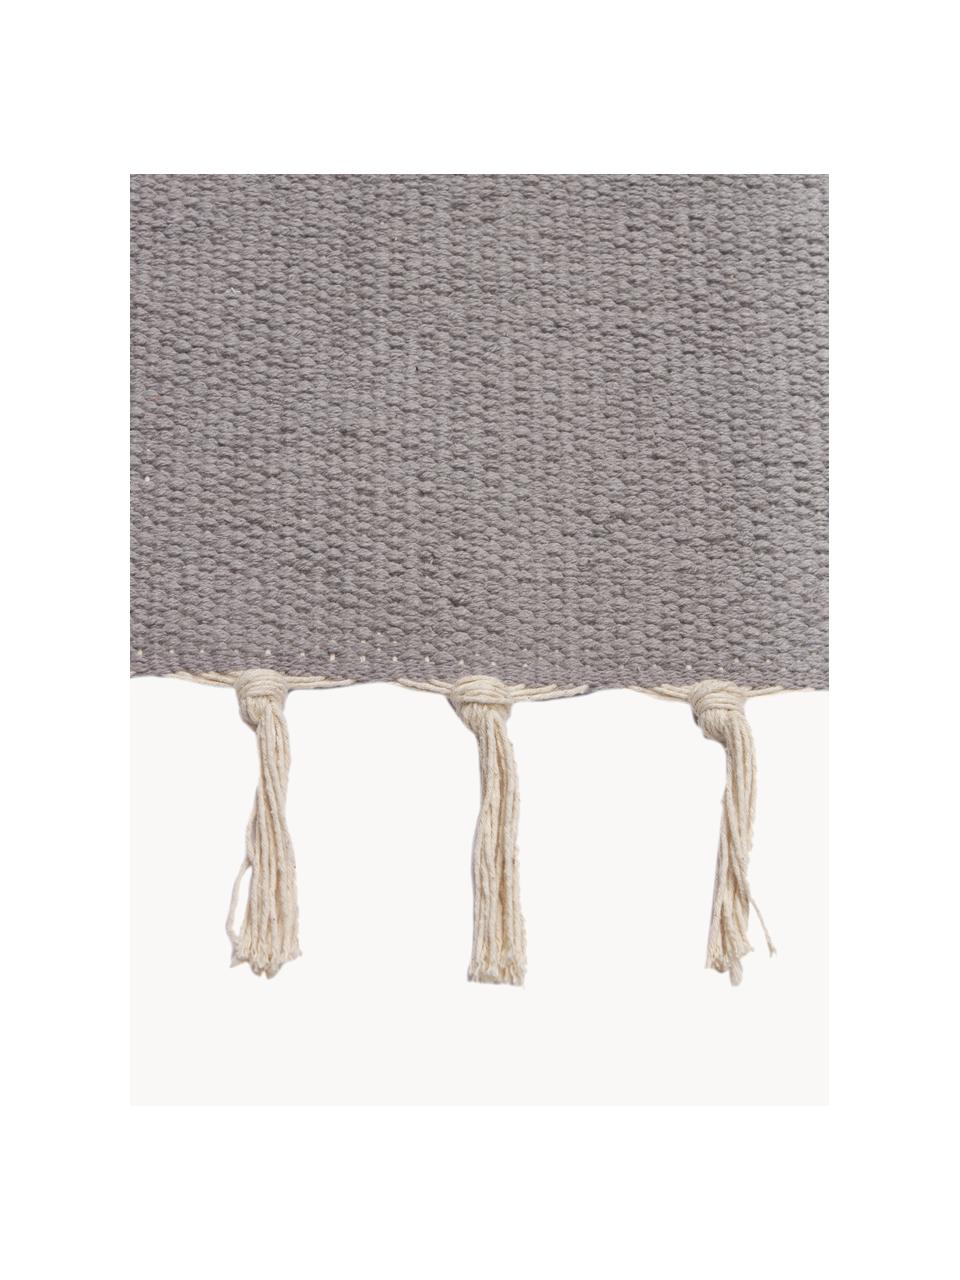 Ręcznie tkany chodnik kilim Indiana, 100% bawełna organiczna z certyfikatem GOTS, Wielobarwny, S 80 x D 200 cm